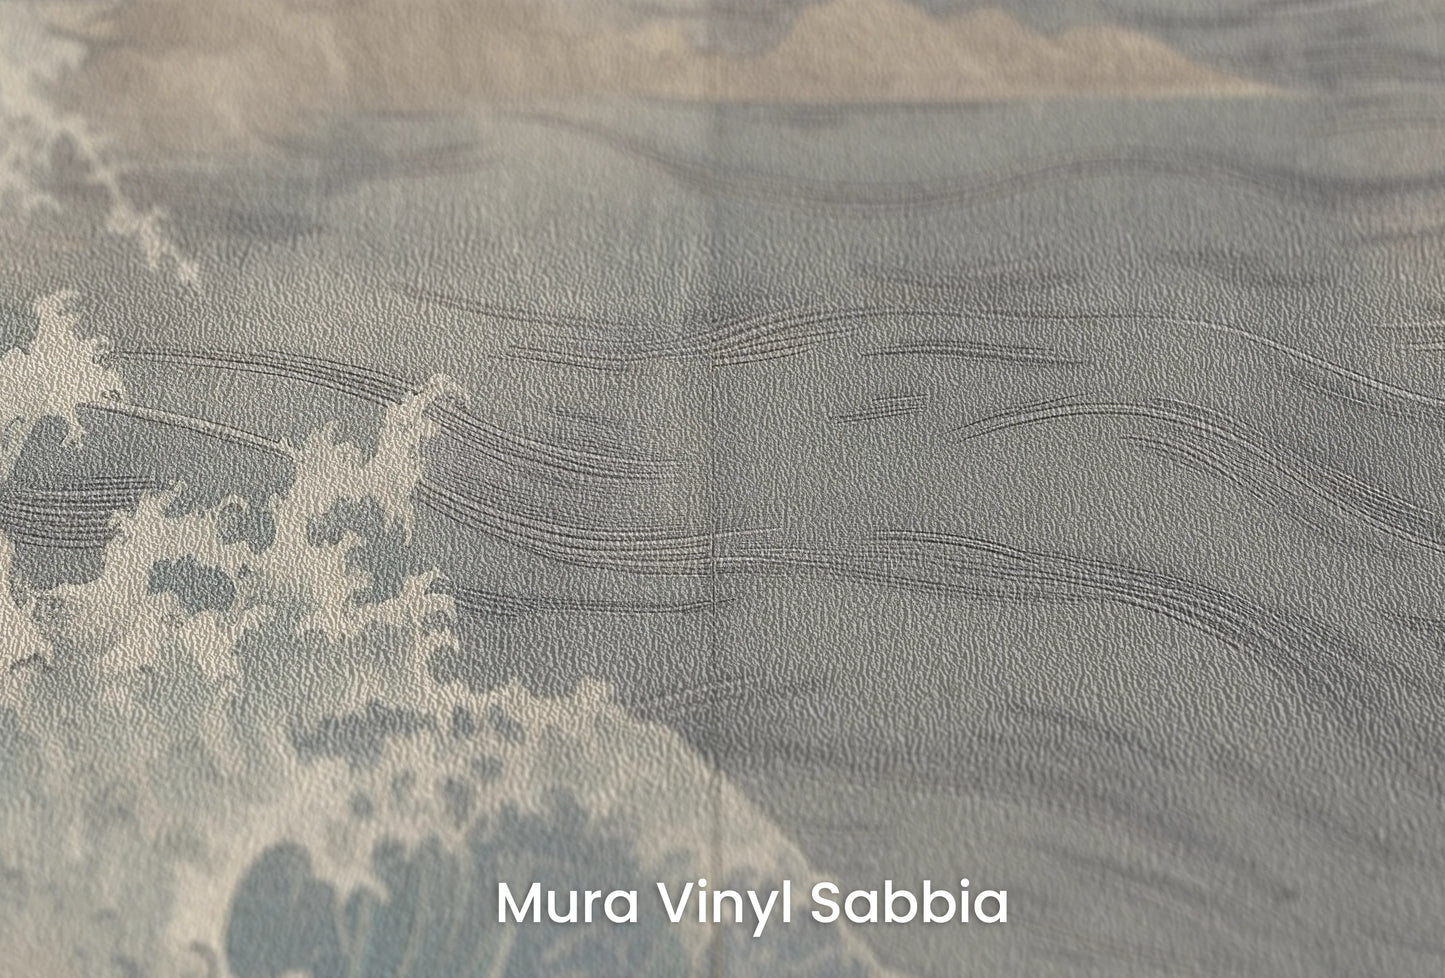 Zbliżenie na artystyczną fototapetę o nazwie Pine Wave Echo na podłożu Mura Vinyl Sabbia struktura grubego ziarna piasku.